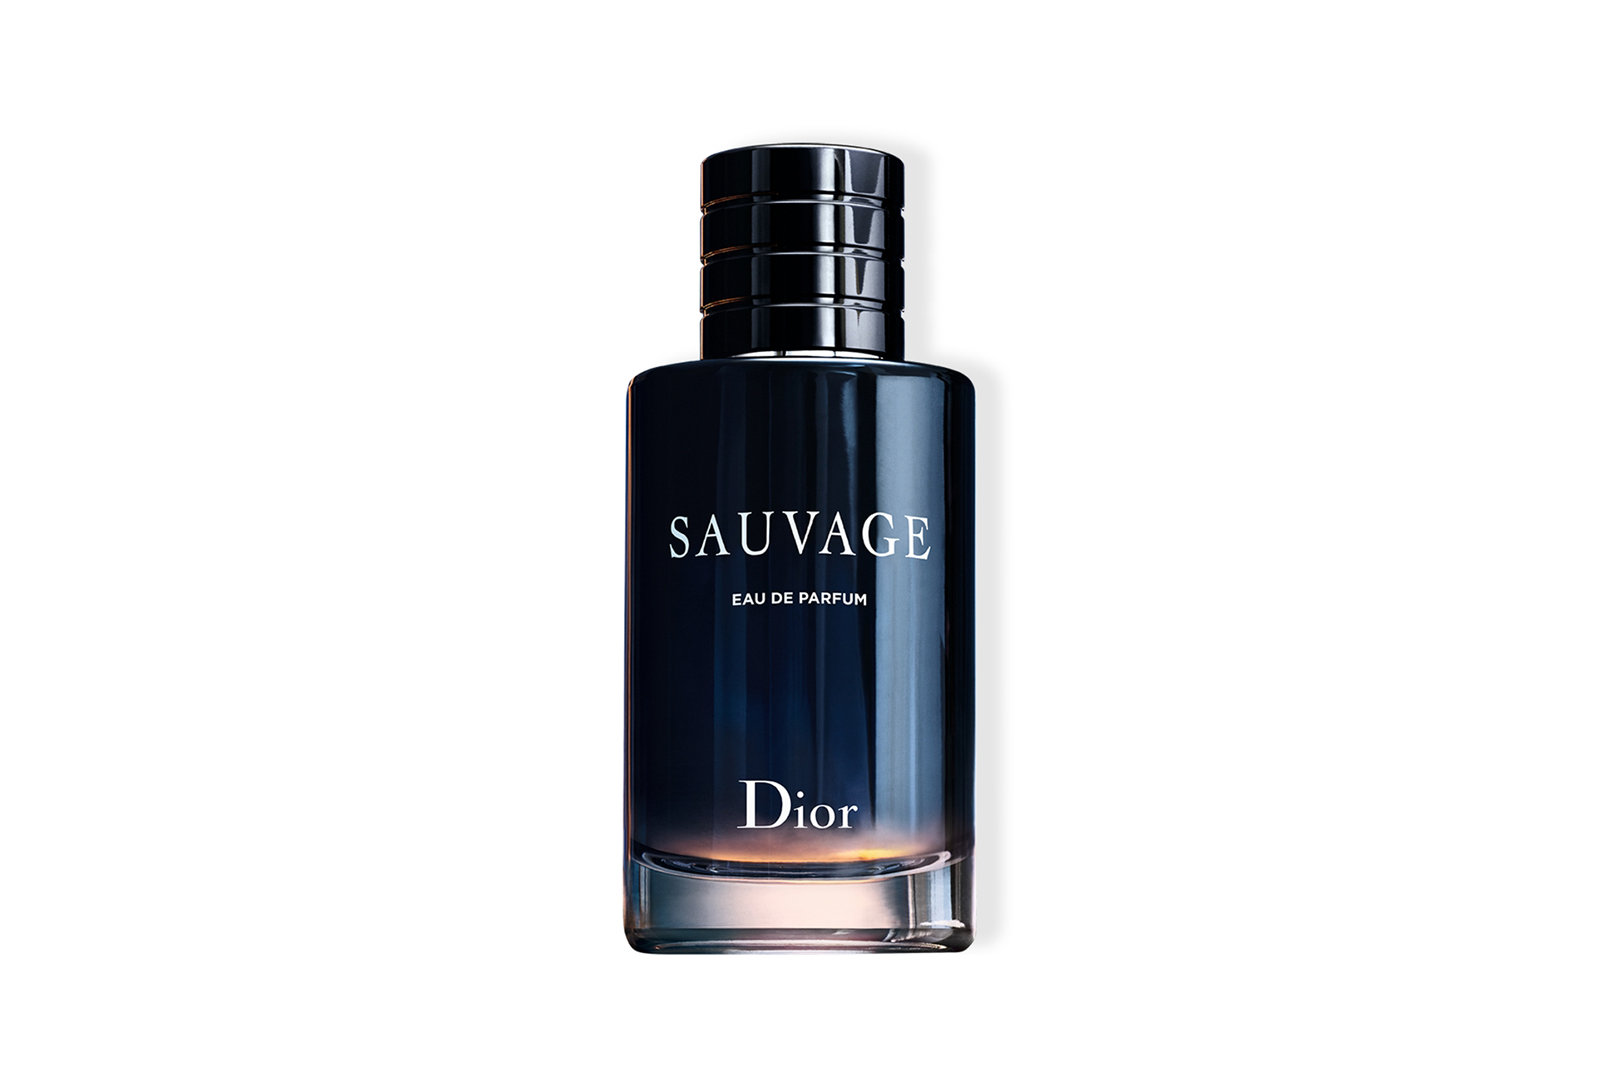 Dior Dior Homme Parfum туалетная вода для мужчин  где купить цены отзывы  и описание аромата Диор Ом Парфам  энциклопедия духов Aromo